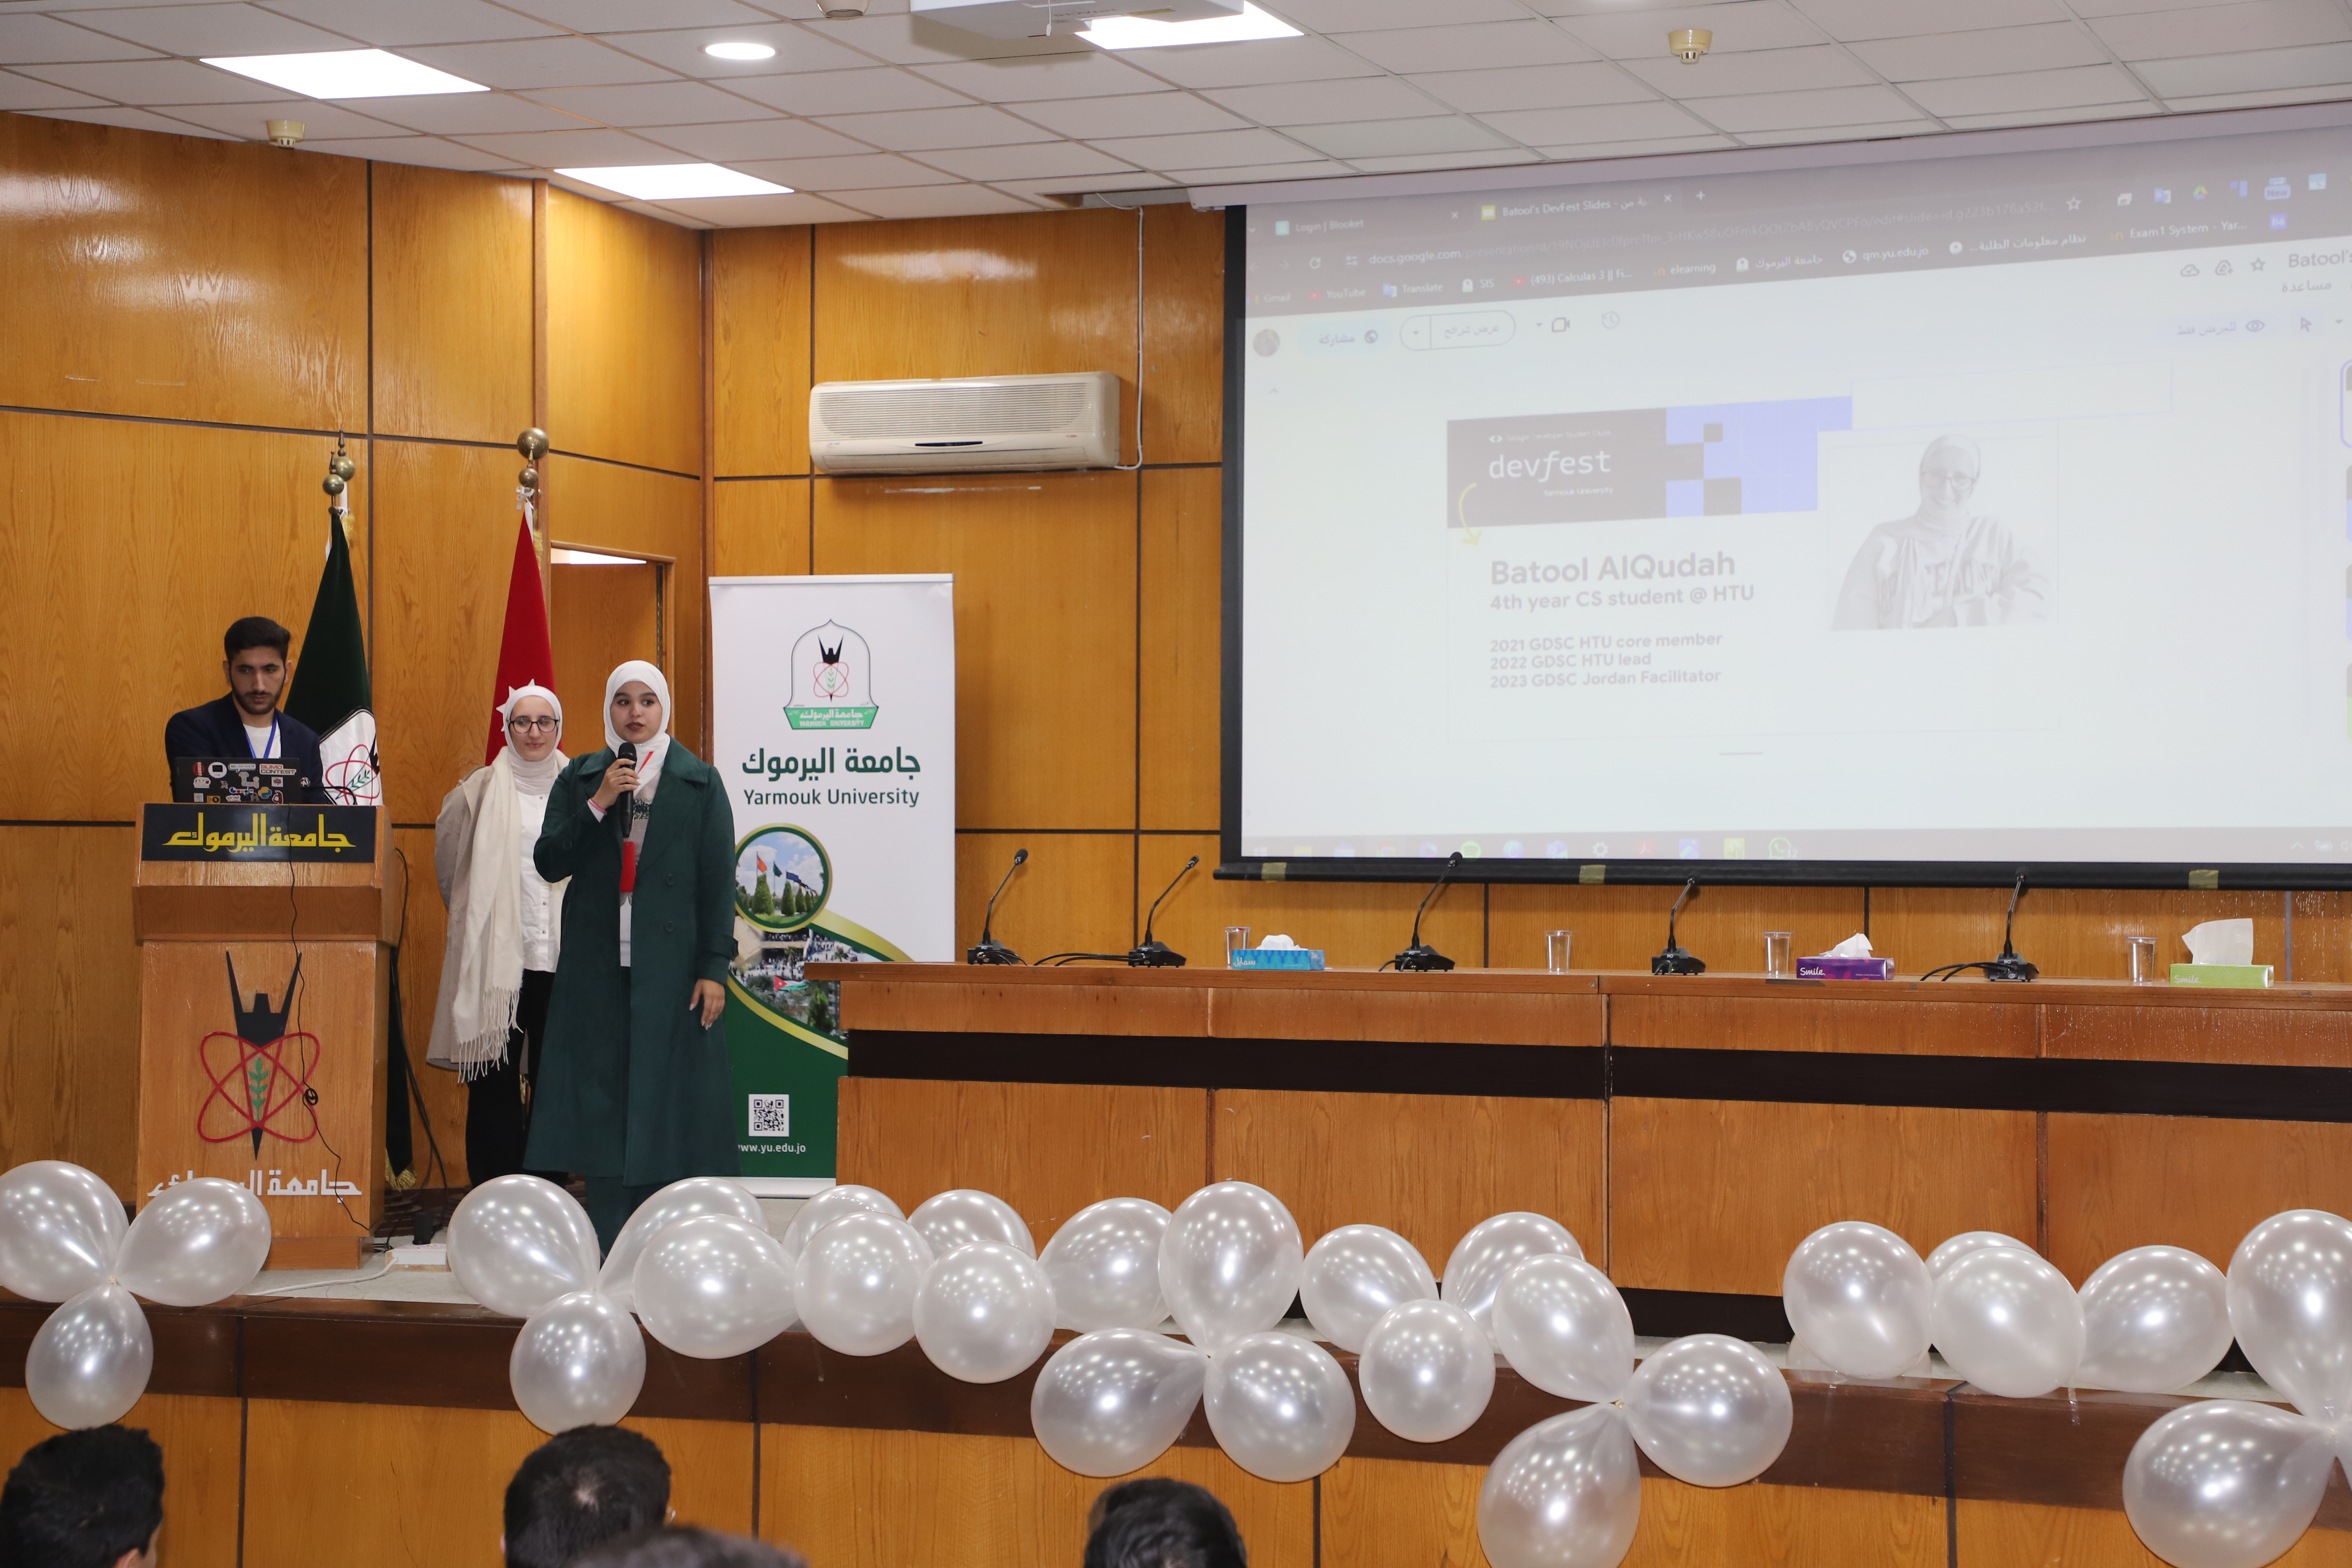 نادي مطوري جوجل في "الحجاوي" ينظم فعالية بعنوان DevFest on campus على مستوى الجامعات الأردنية